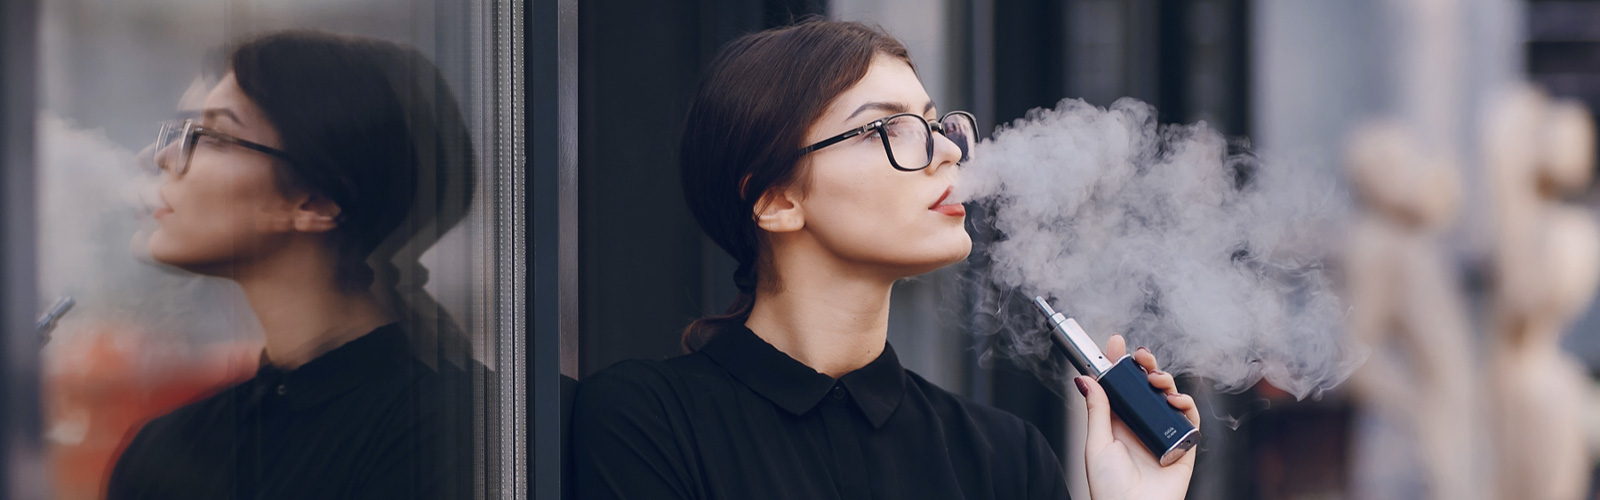 NYU Researchers Discover a Unique Oral Microbiome in E-cigarette Users